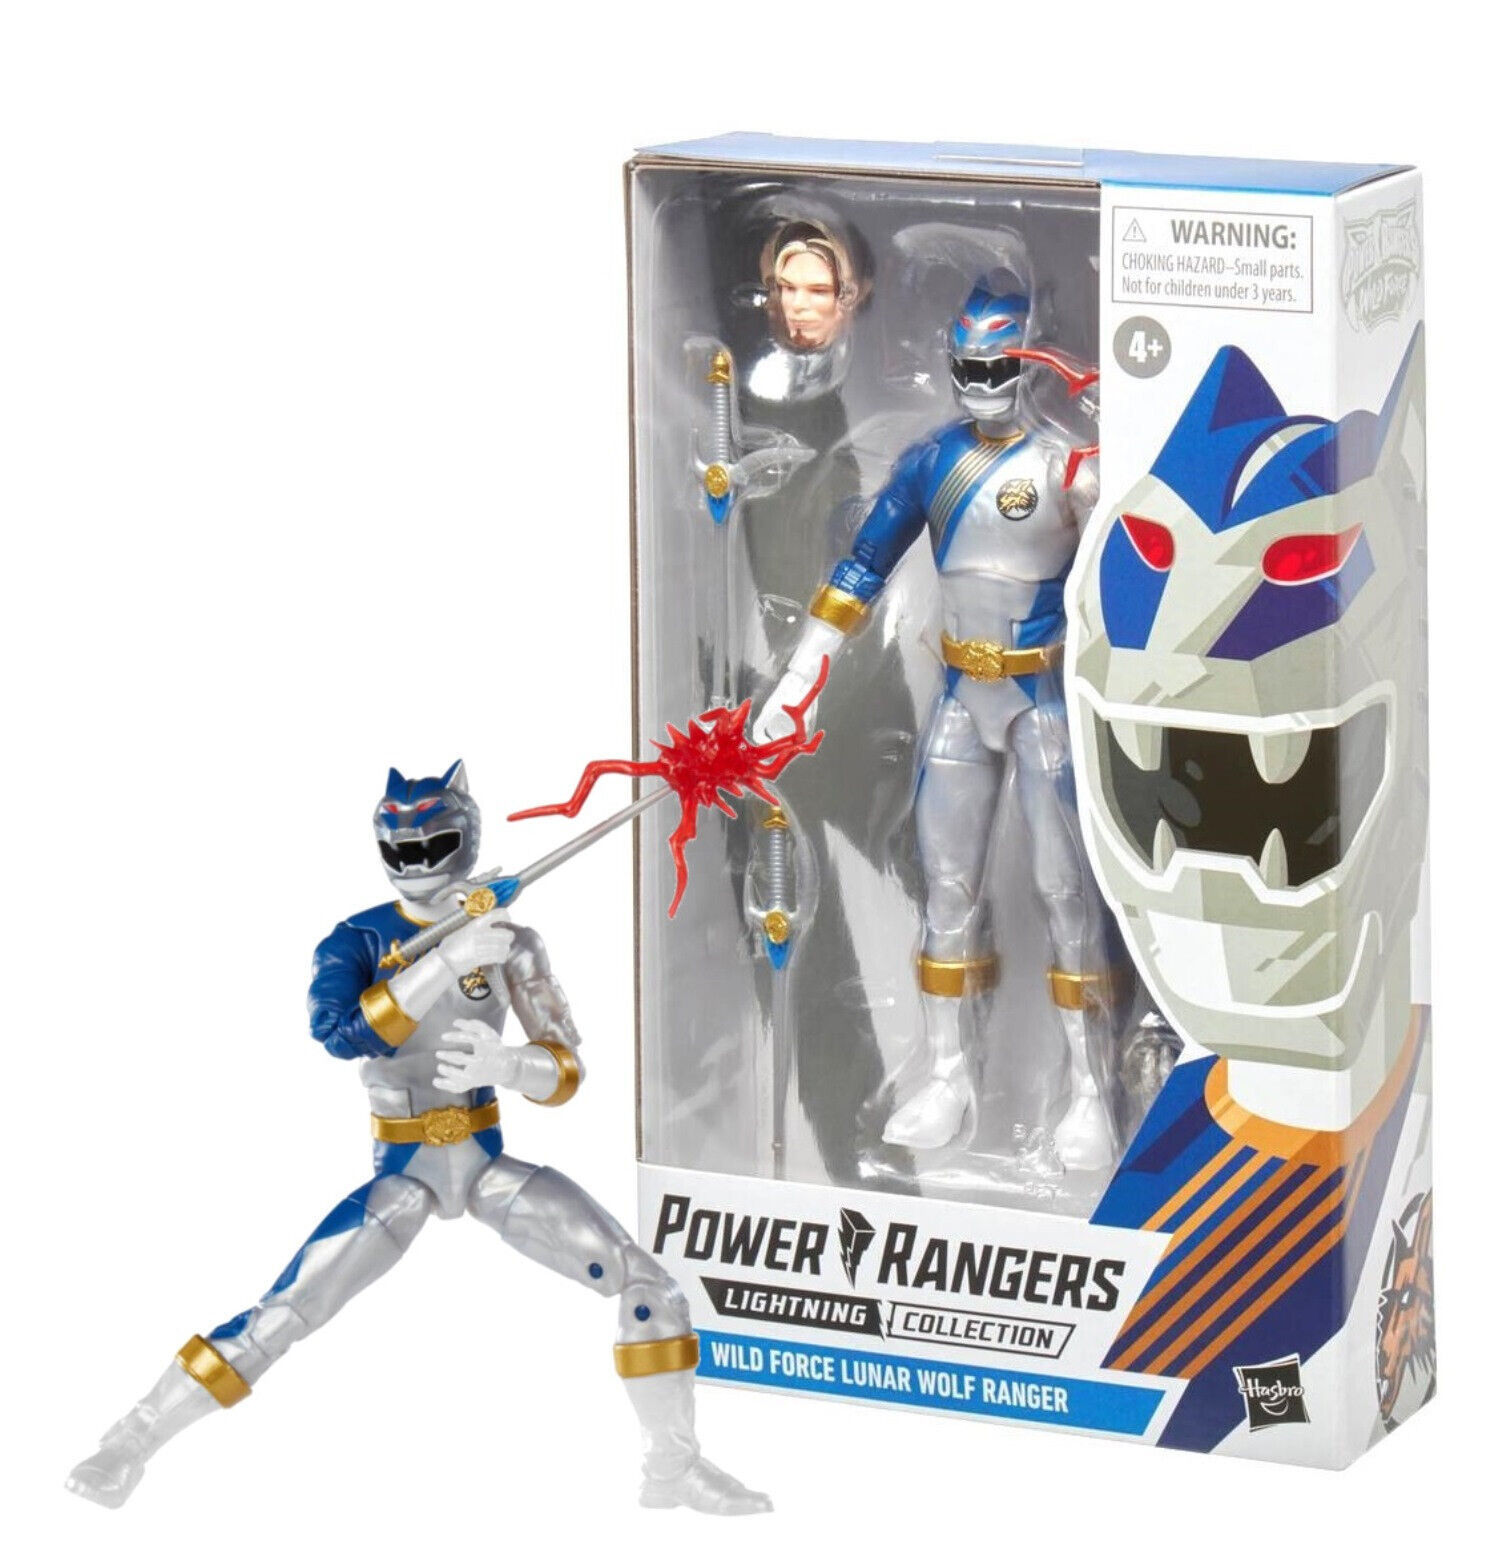 Power Rangers Lightning Collection Wild Force Lunar Wolf Ranger 6" Figure NIB - $18.88